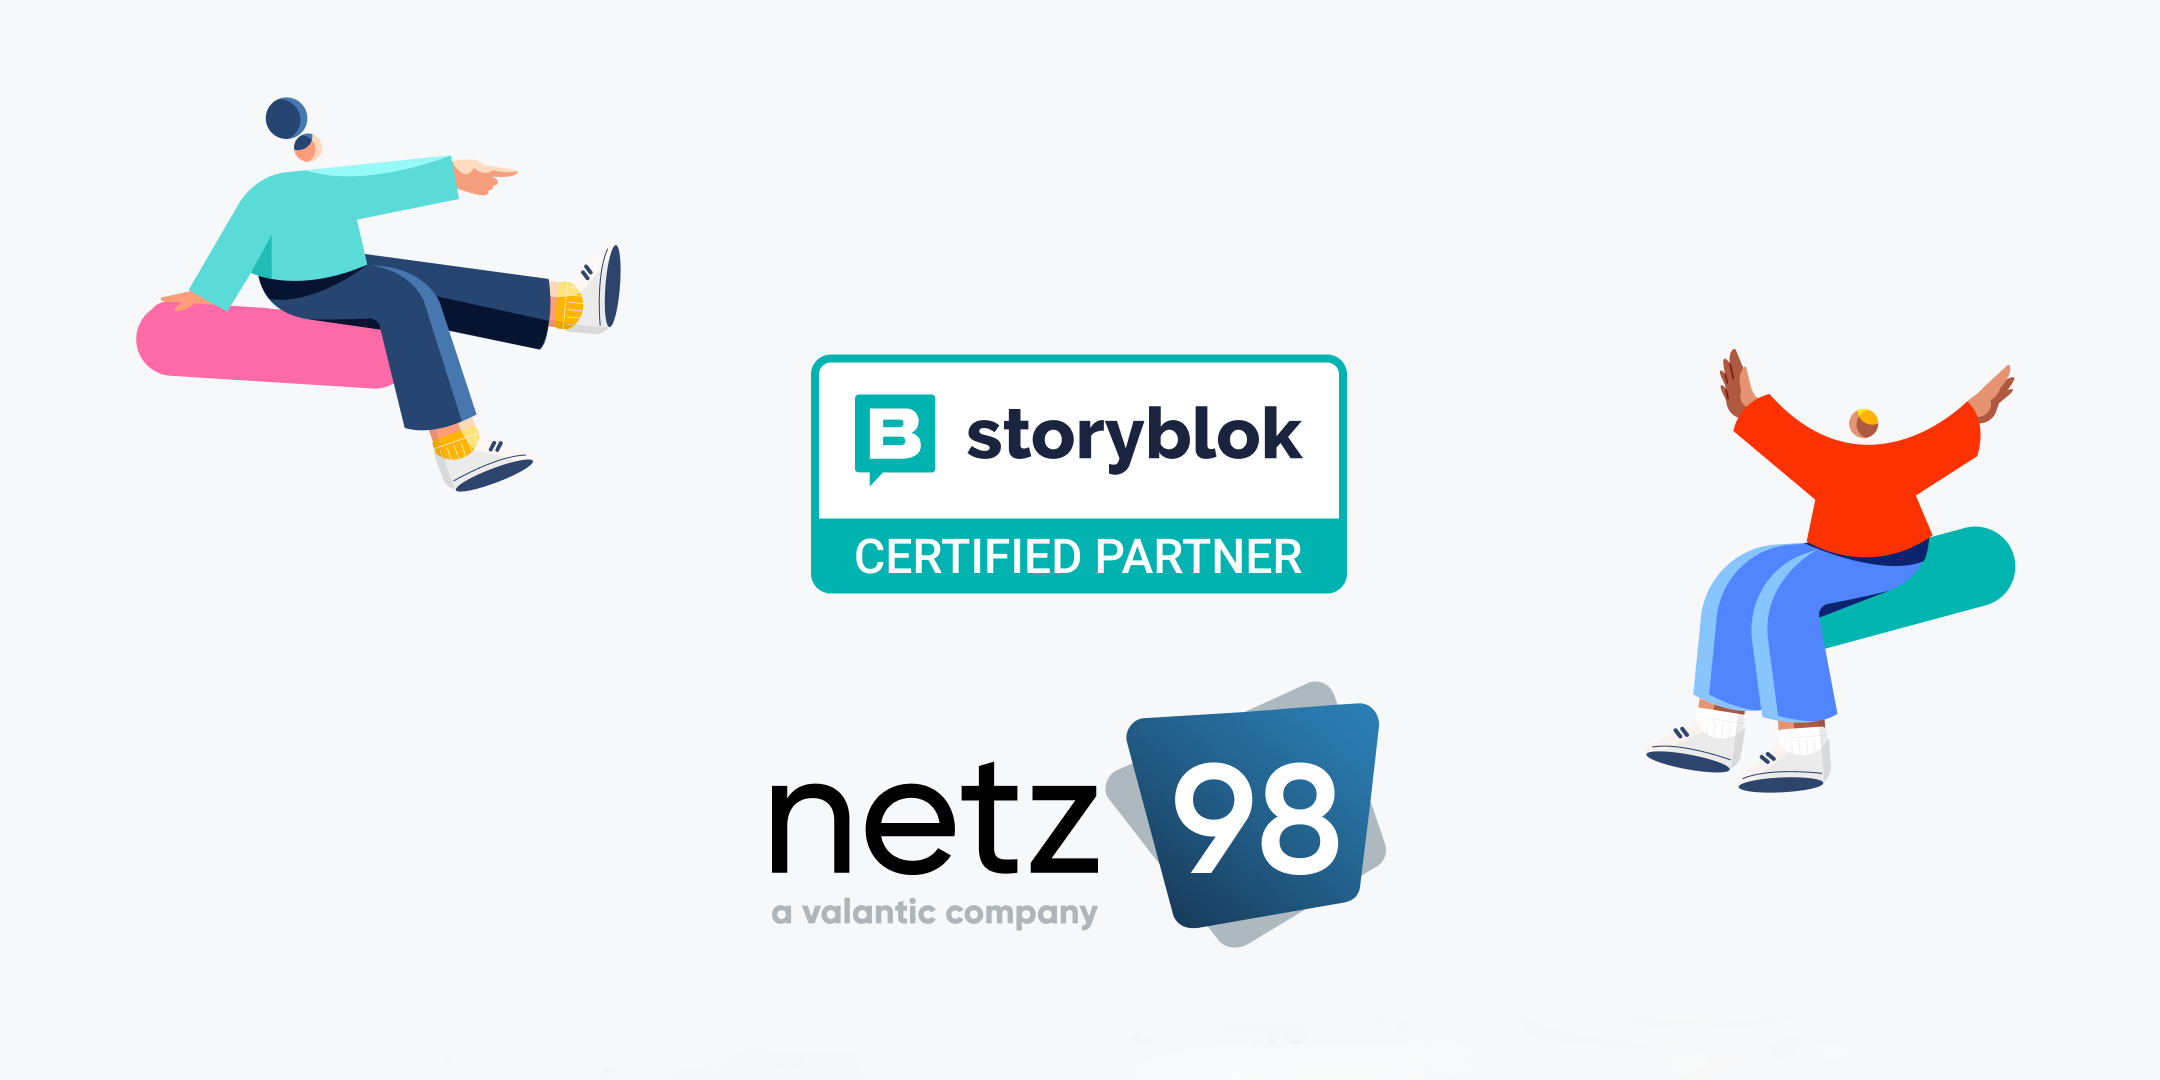 Logos von netz98 und storyblok sowie zwei Figuren, die sich freuen und die Logos links oben und rechts mittig einrahmen